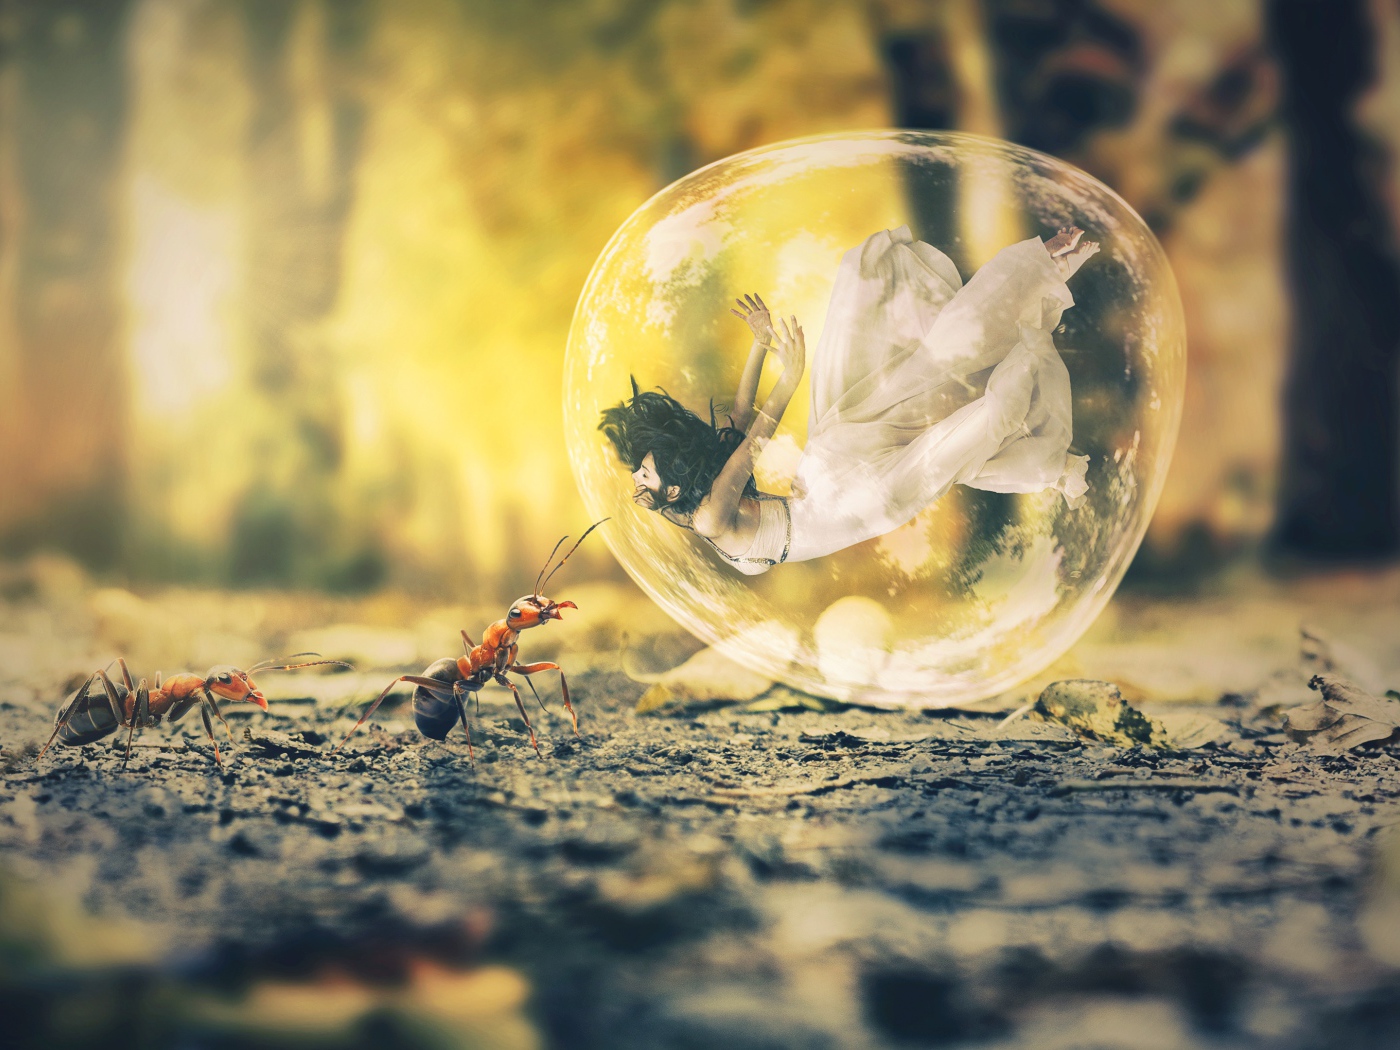 Девушка в пузыре на асфальте с муравьями